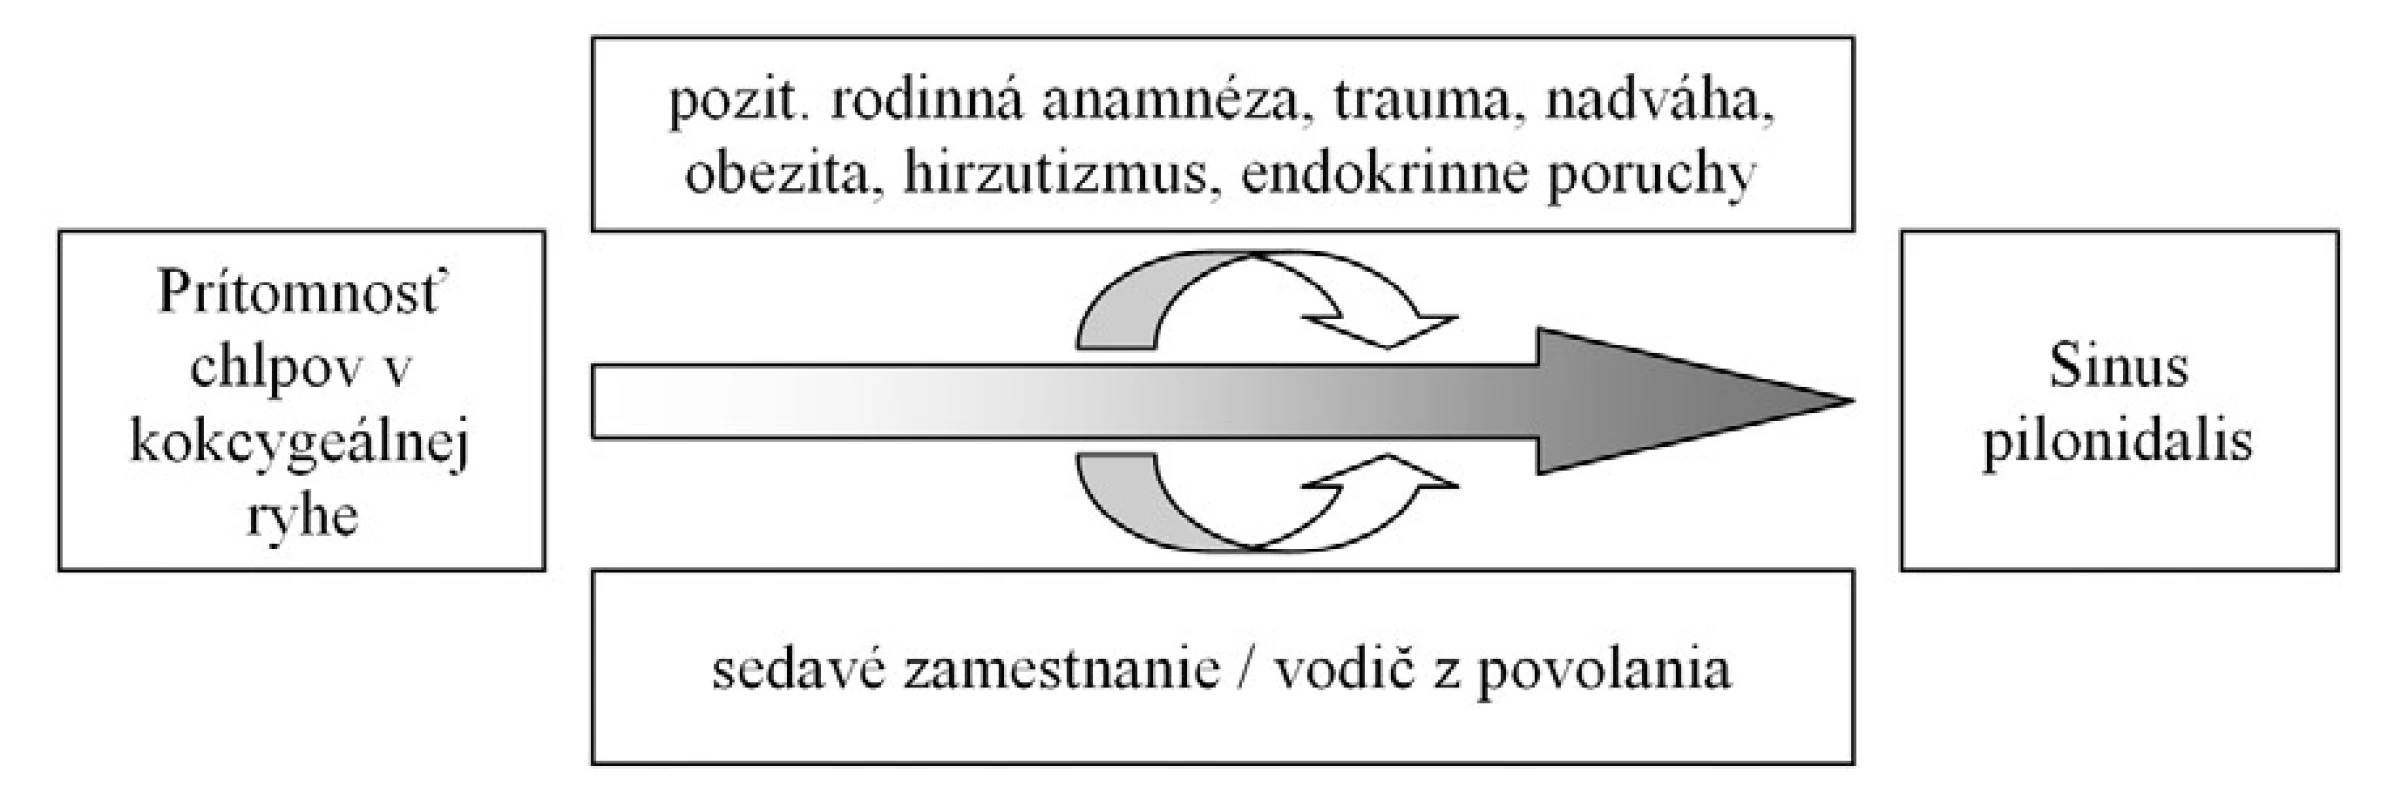 Názorný nákres rizikových faktorov vzniku pilonidálneho sinusu – voľne podľa [2, 7].
Obr. 1. Scheme of pilonidal sinus disease risk factors – according [2, 7].